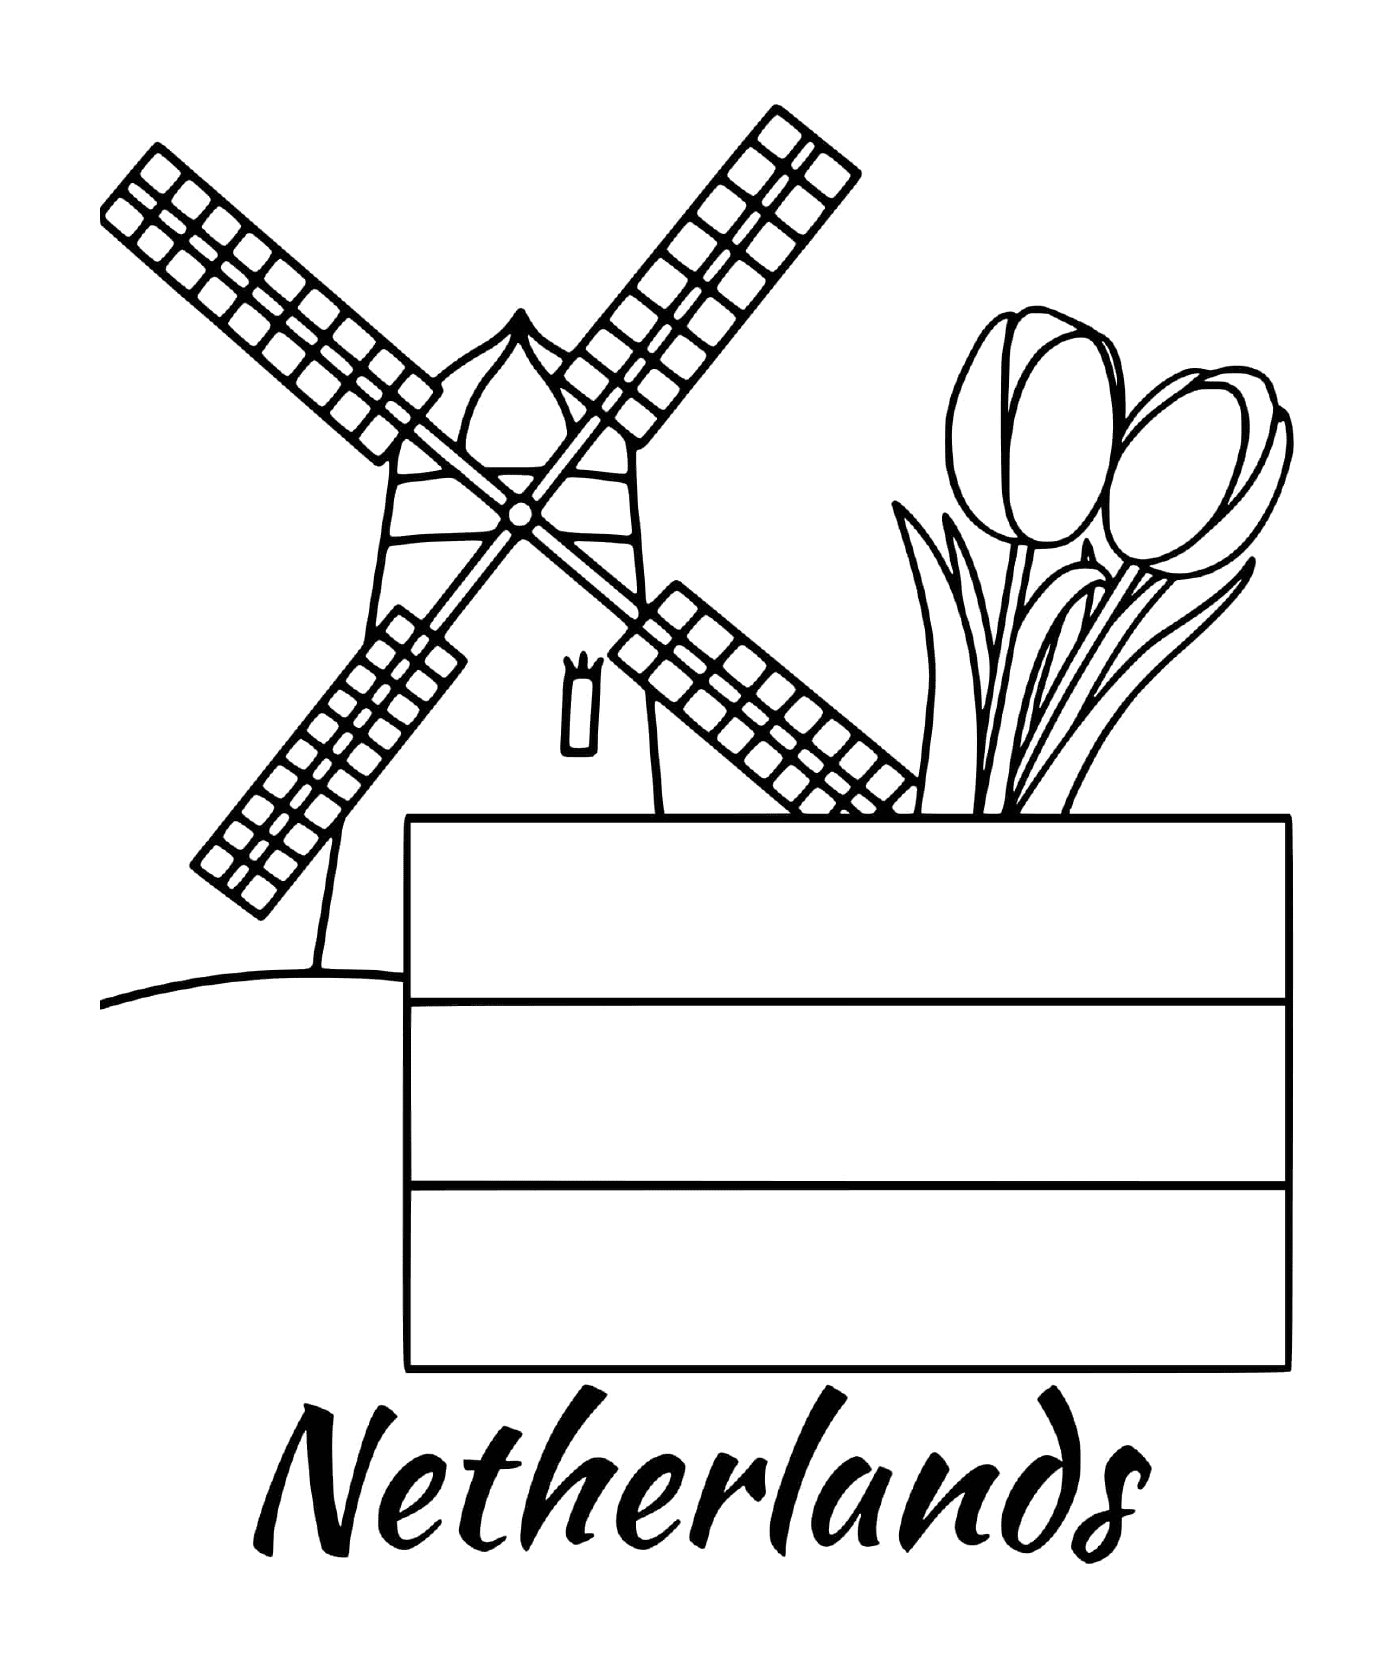  装有风车的荷兰国旗 